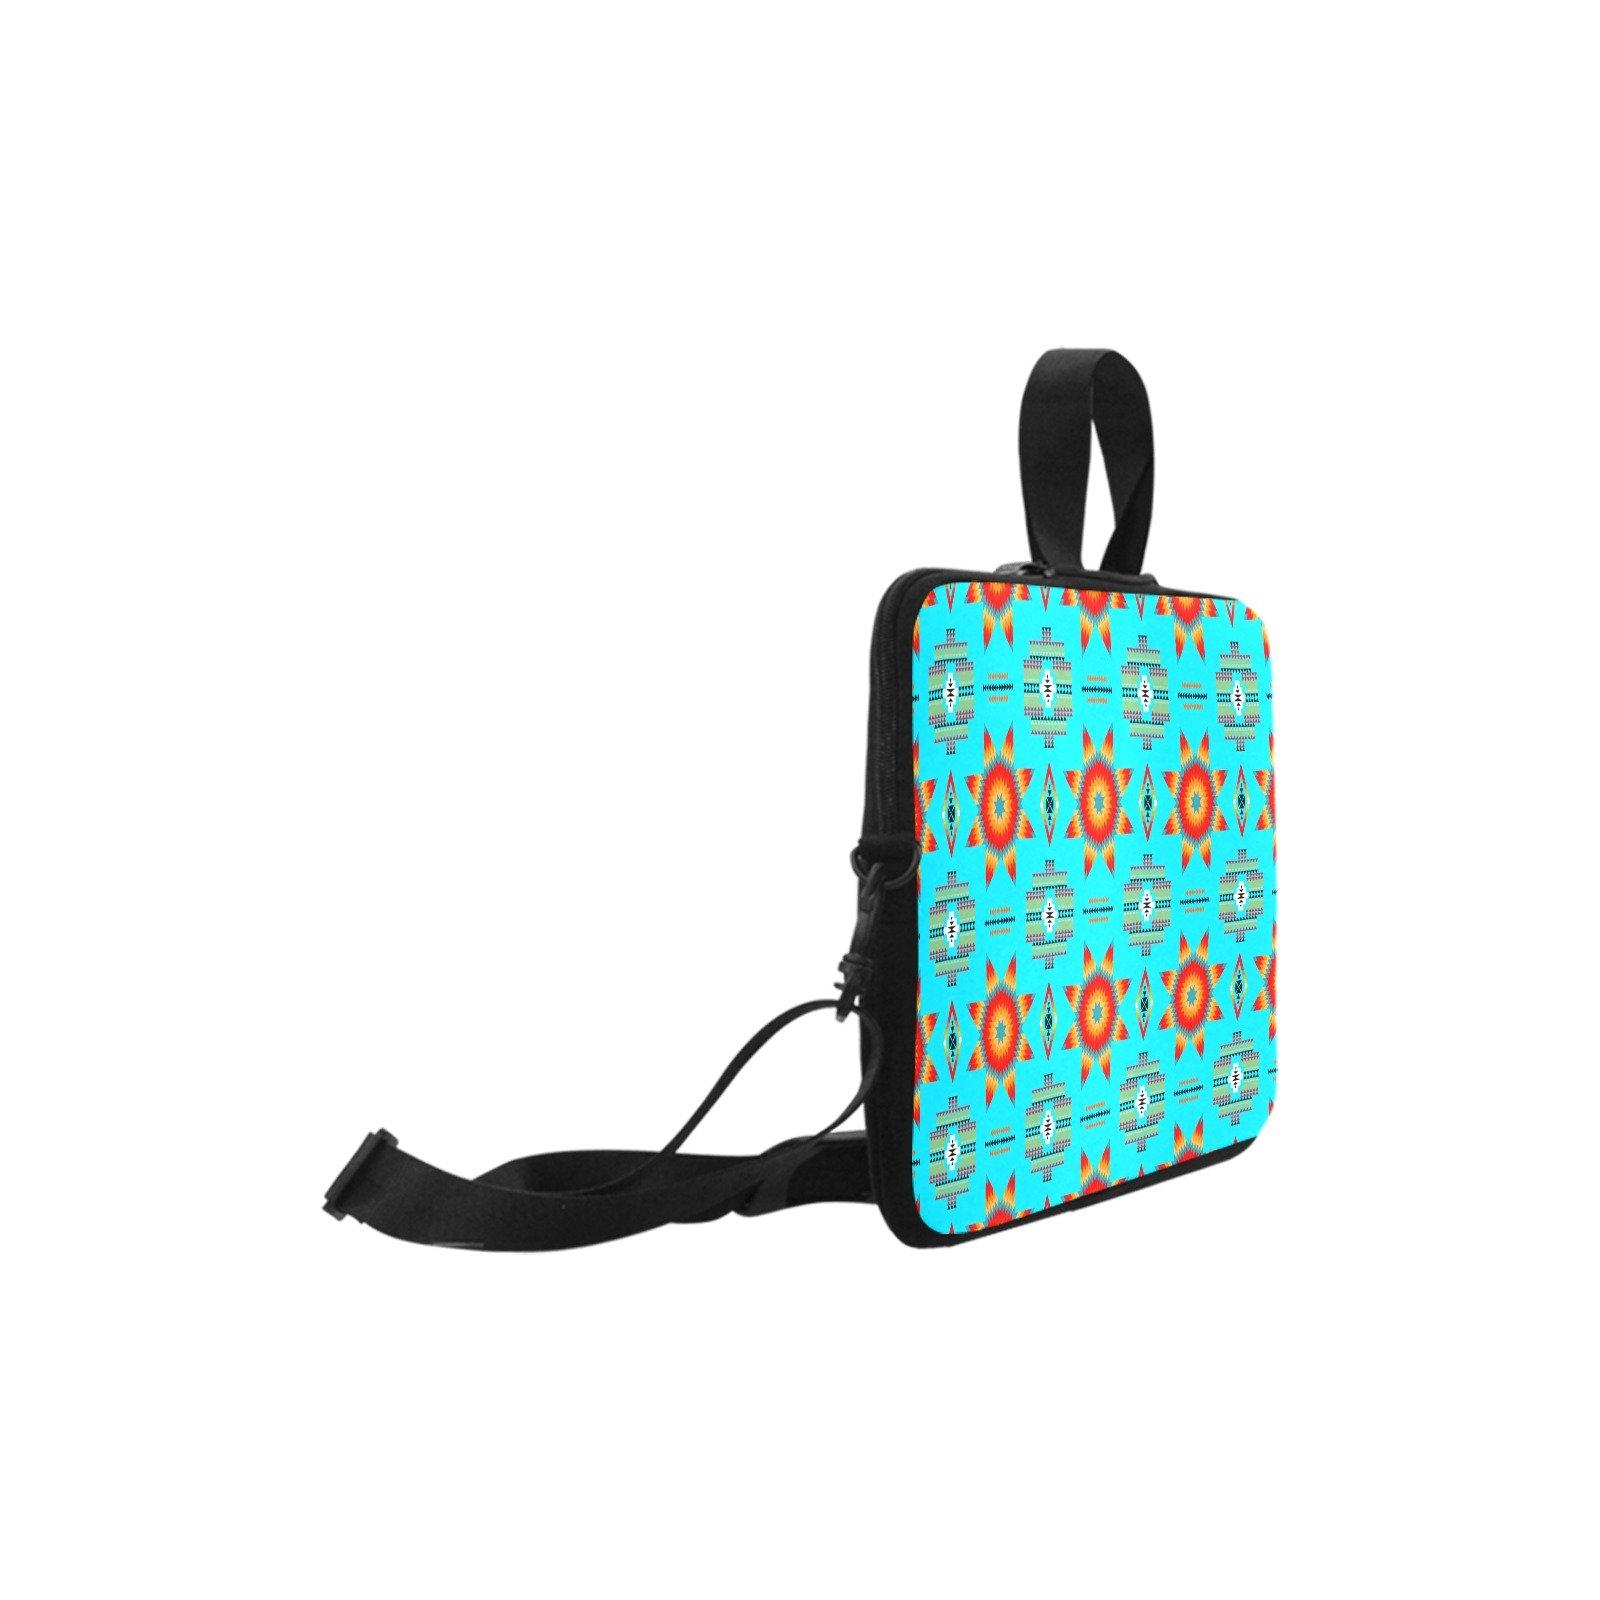 Rising Star Harvest Moon Laptop Handbags 17" bag e-joyer 